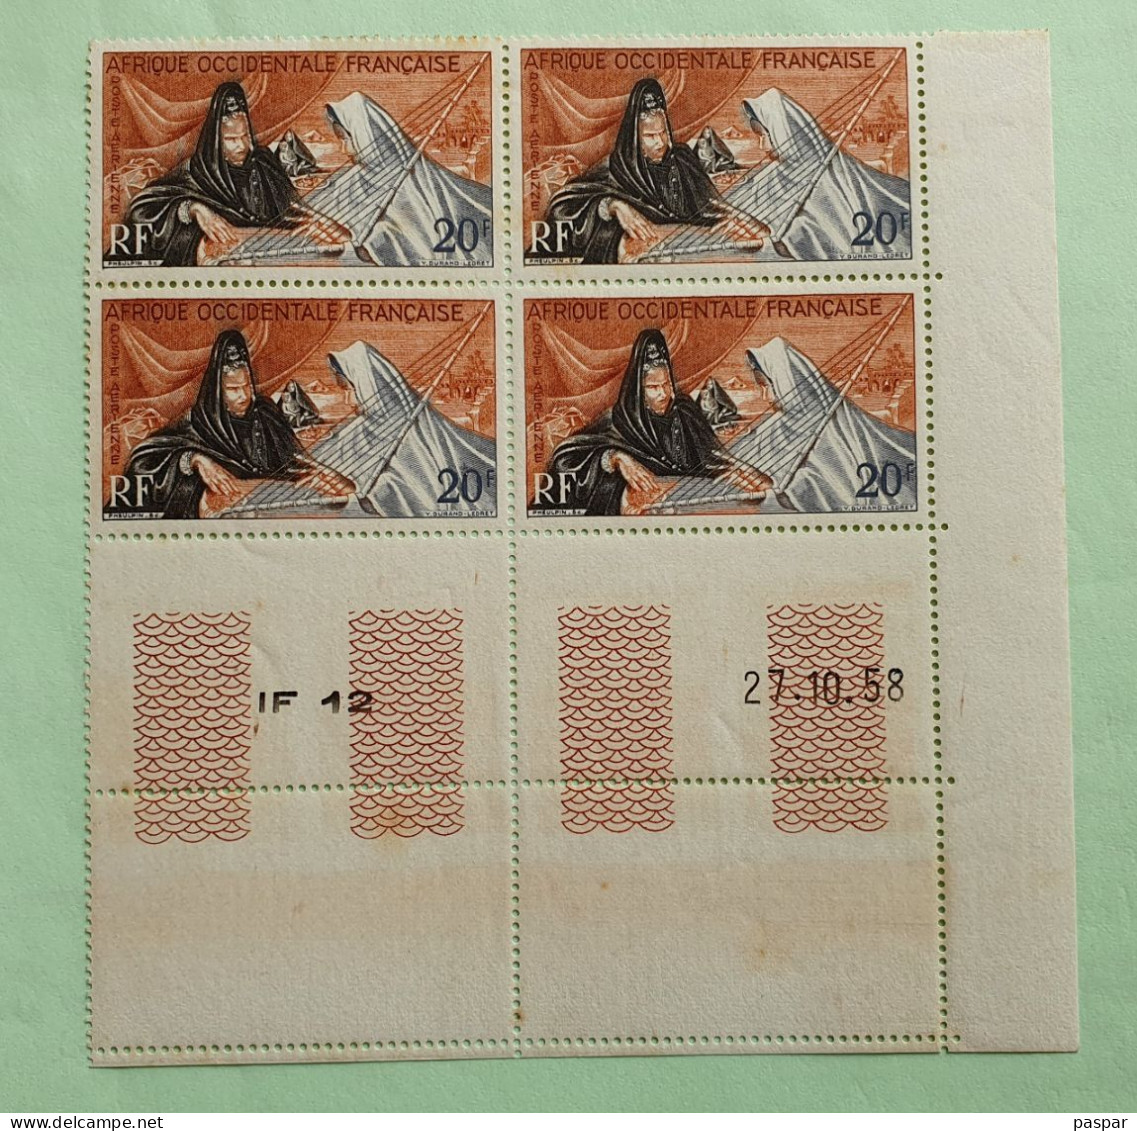 Bloc De 4 Timbres Neufs AOF 20F Coin Daté 27.10.58 - IF12 - MNH - YT PA28 - Joueuses D'Ardin Sous La Tente 1958 - Unused Stamps